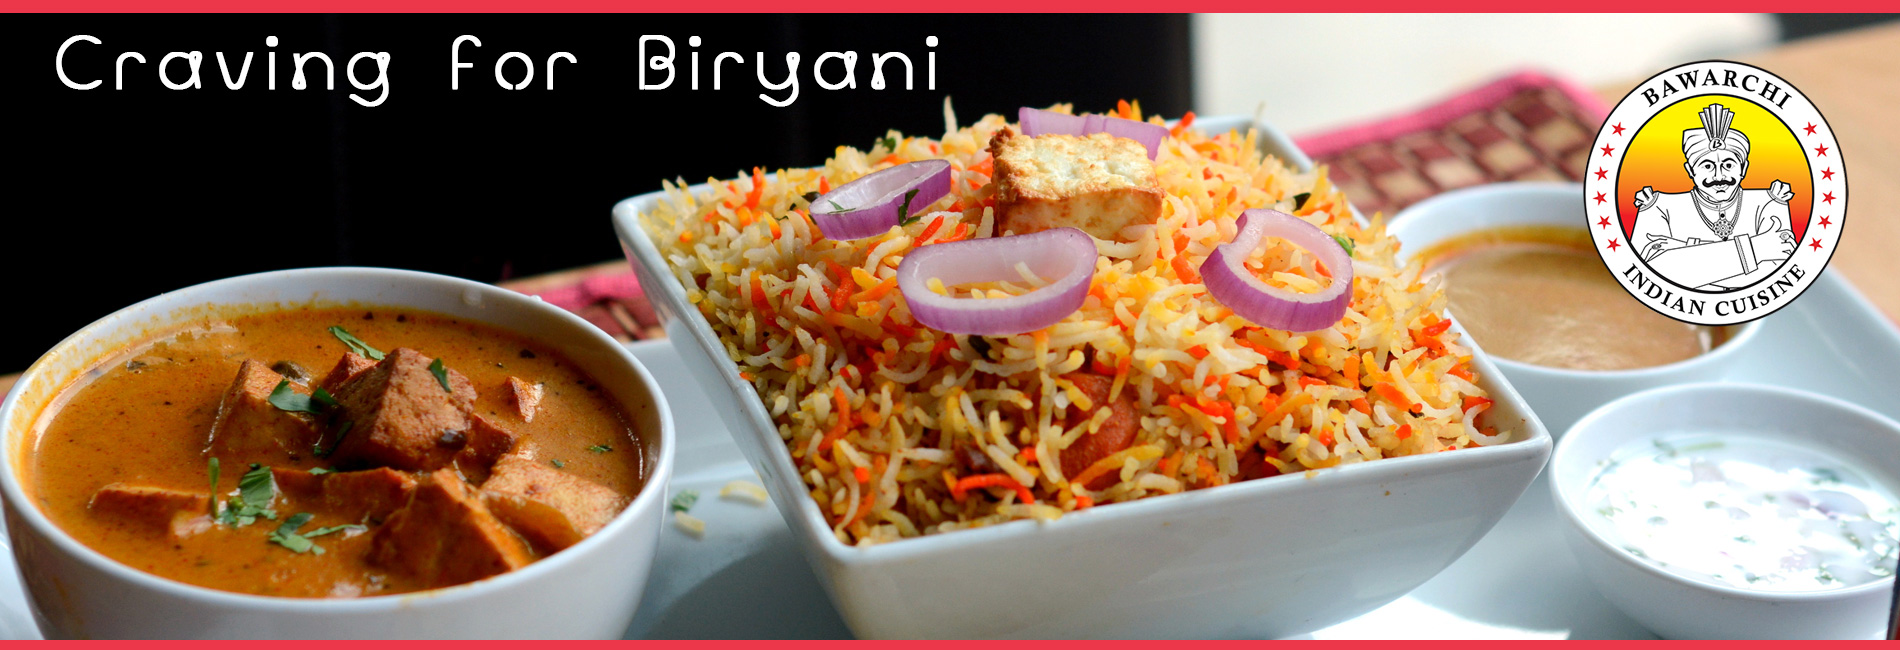 Bawarchi Biryanis Food